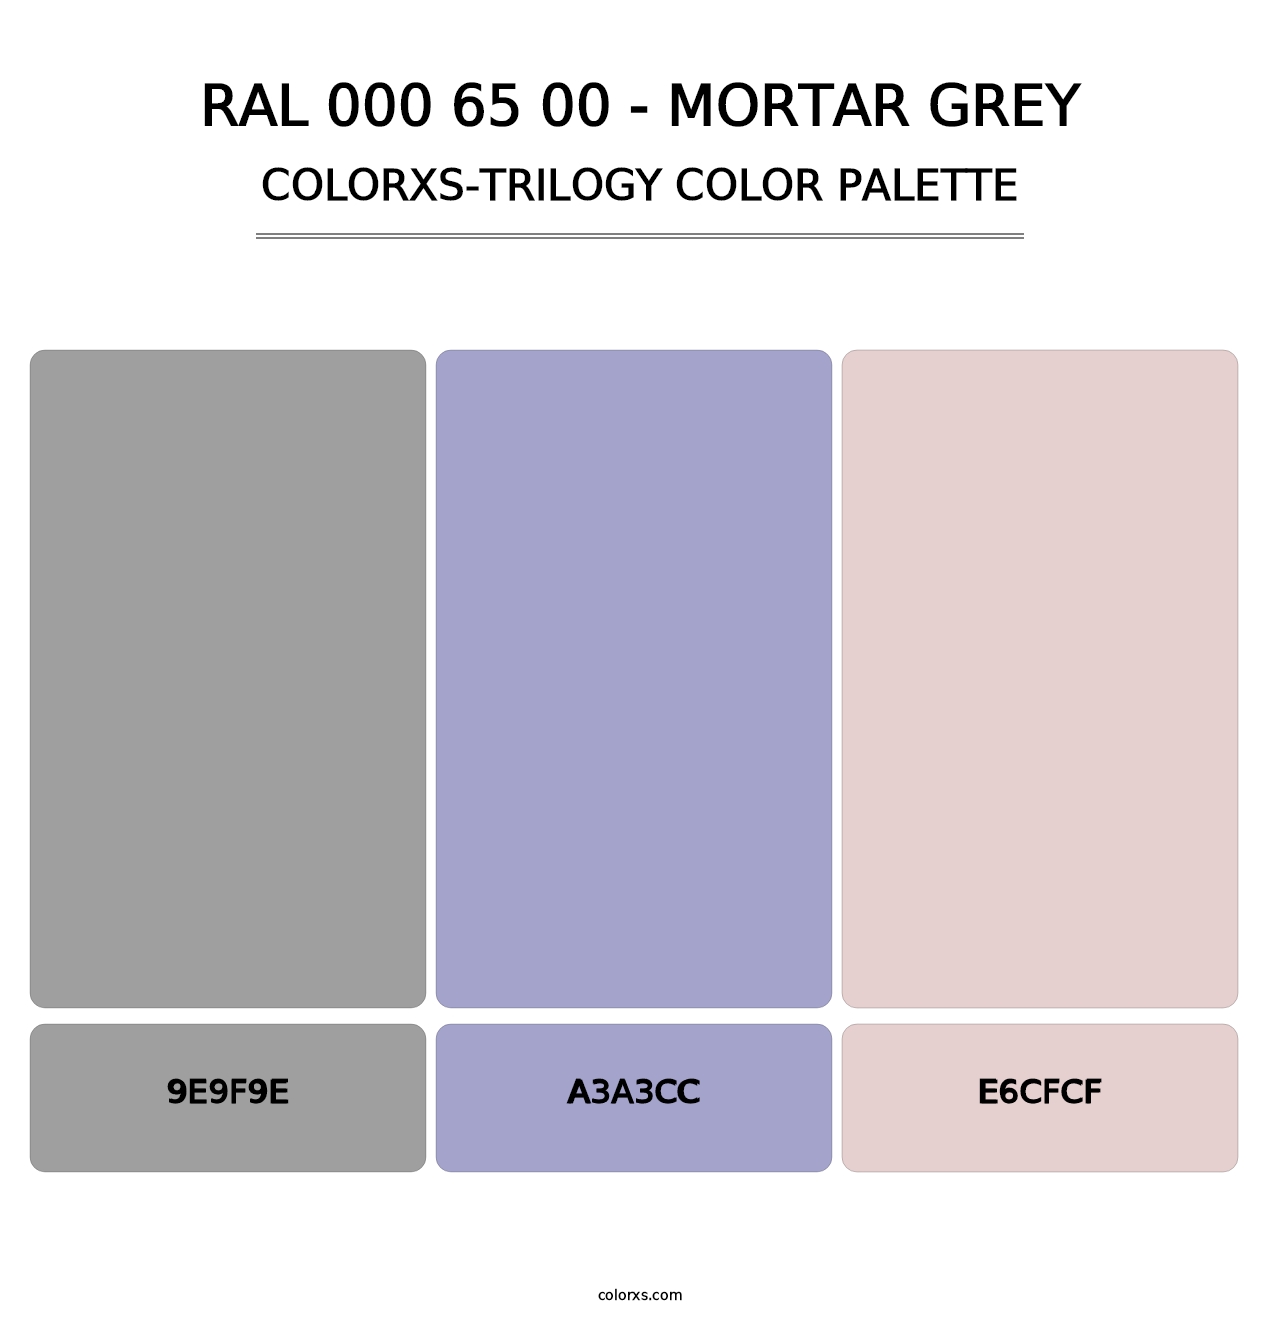 RAL 000 65 00 - Mortar Grey - Colorxs Trilogy Palette